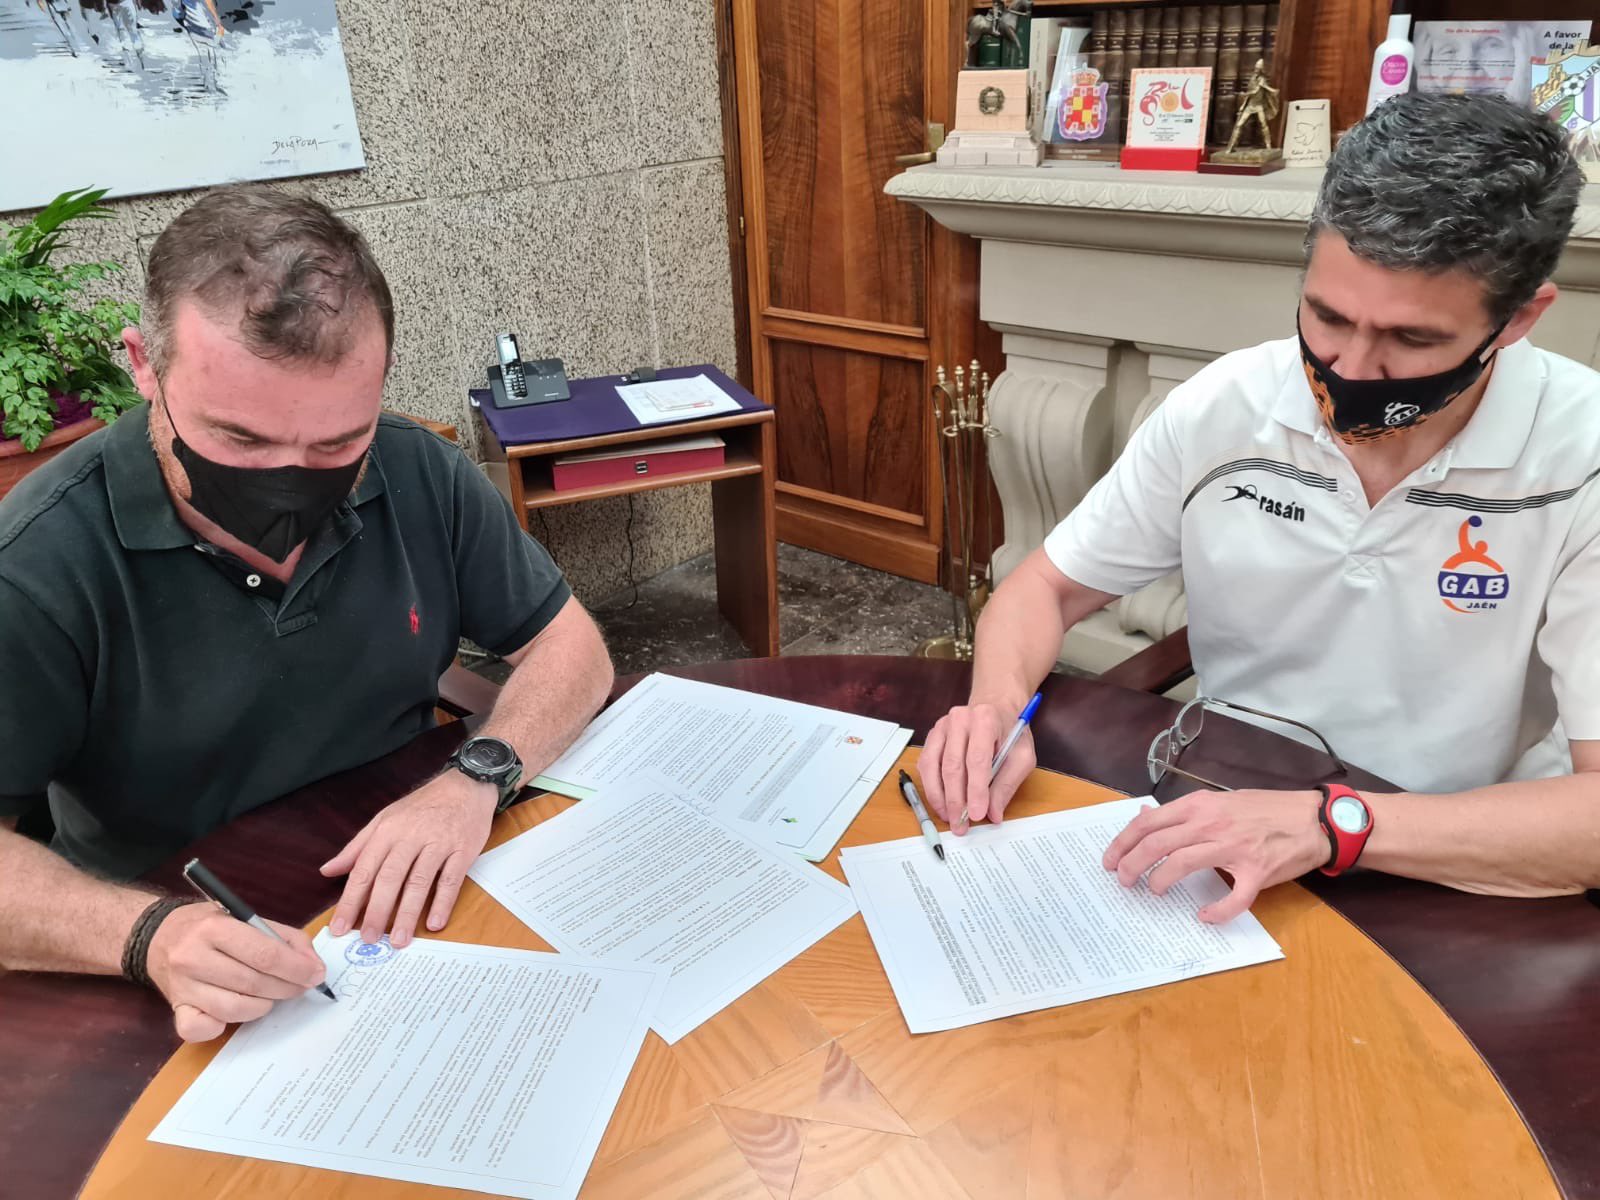 Acuerdo de colaboración entre el Ayuntamiento y el GAB Jaén